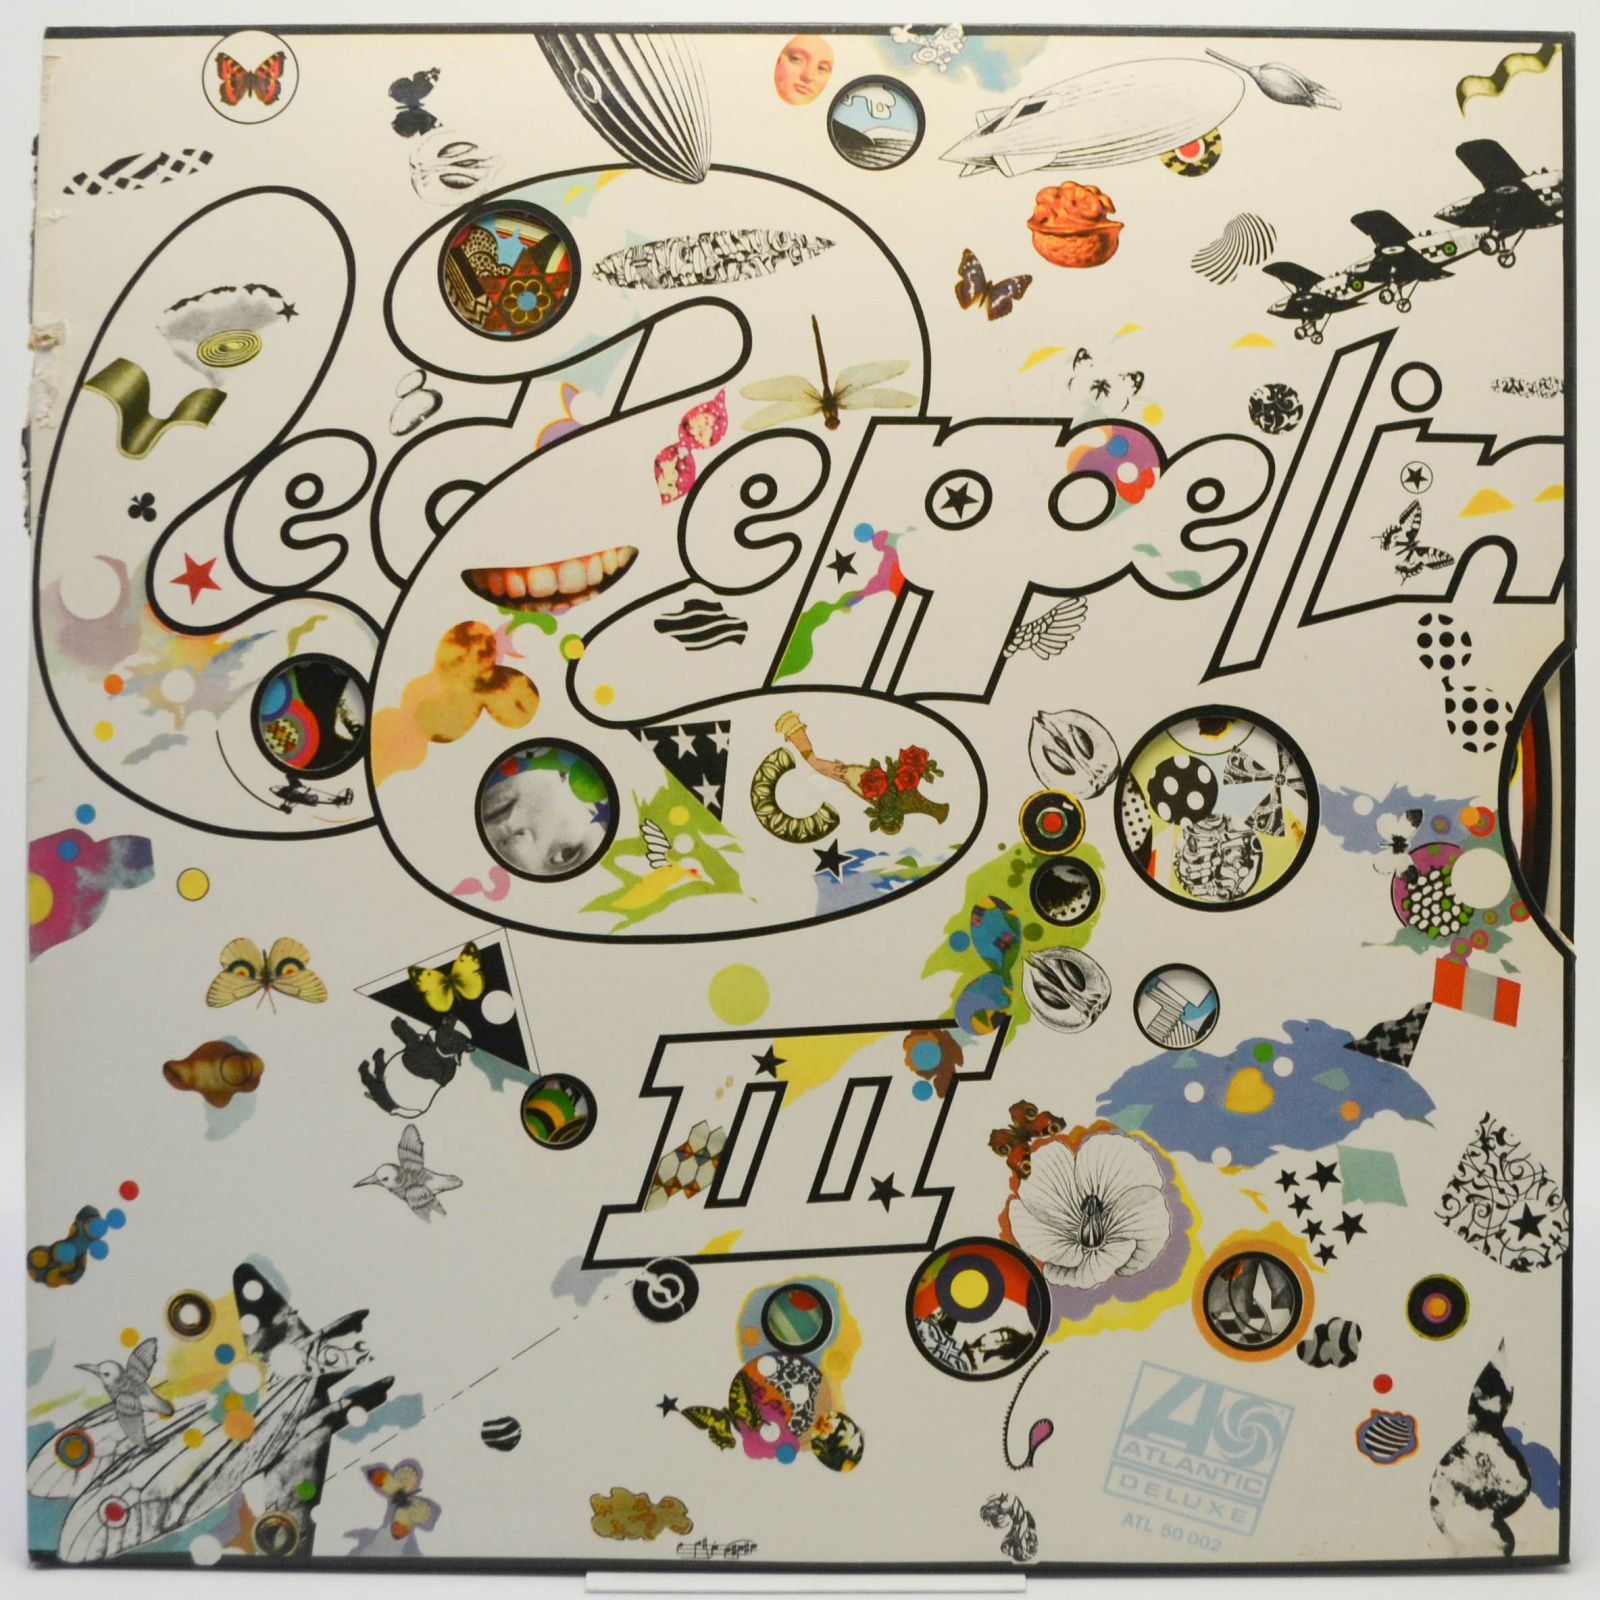 Led Zeppelin III, 1970